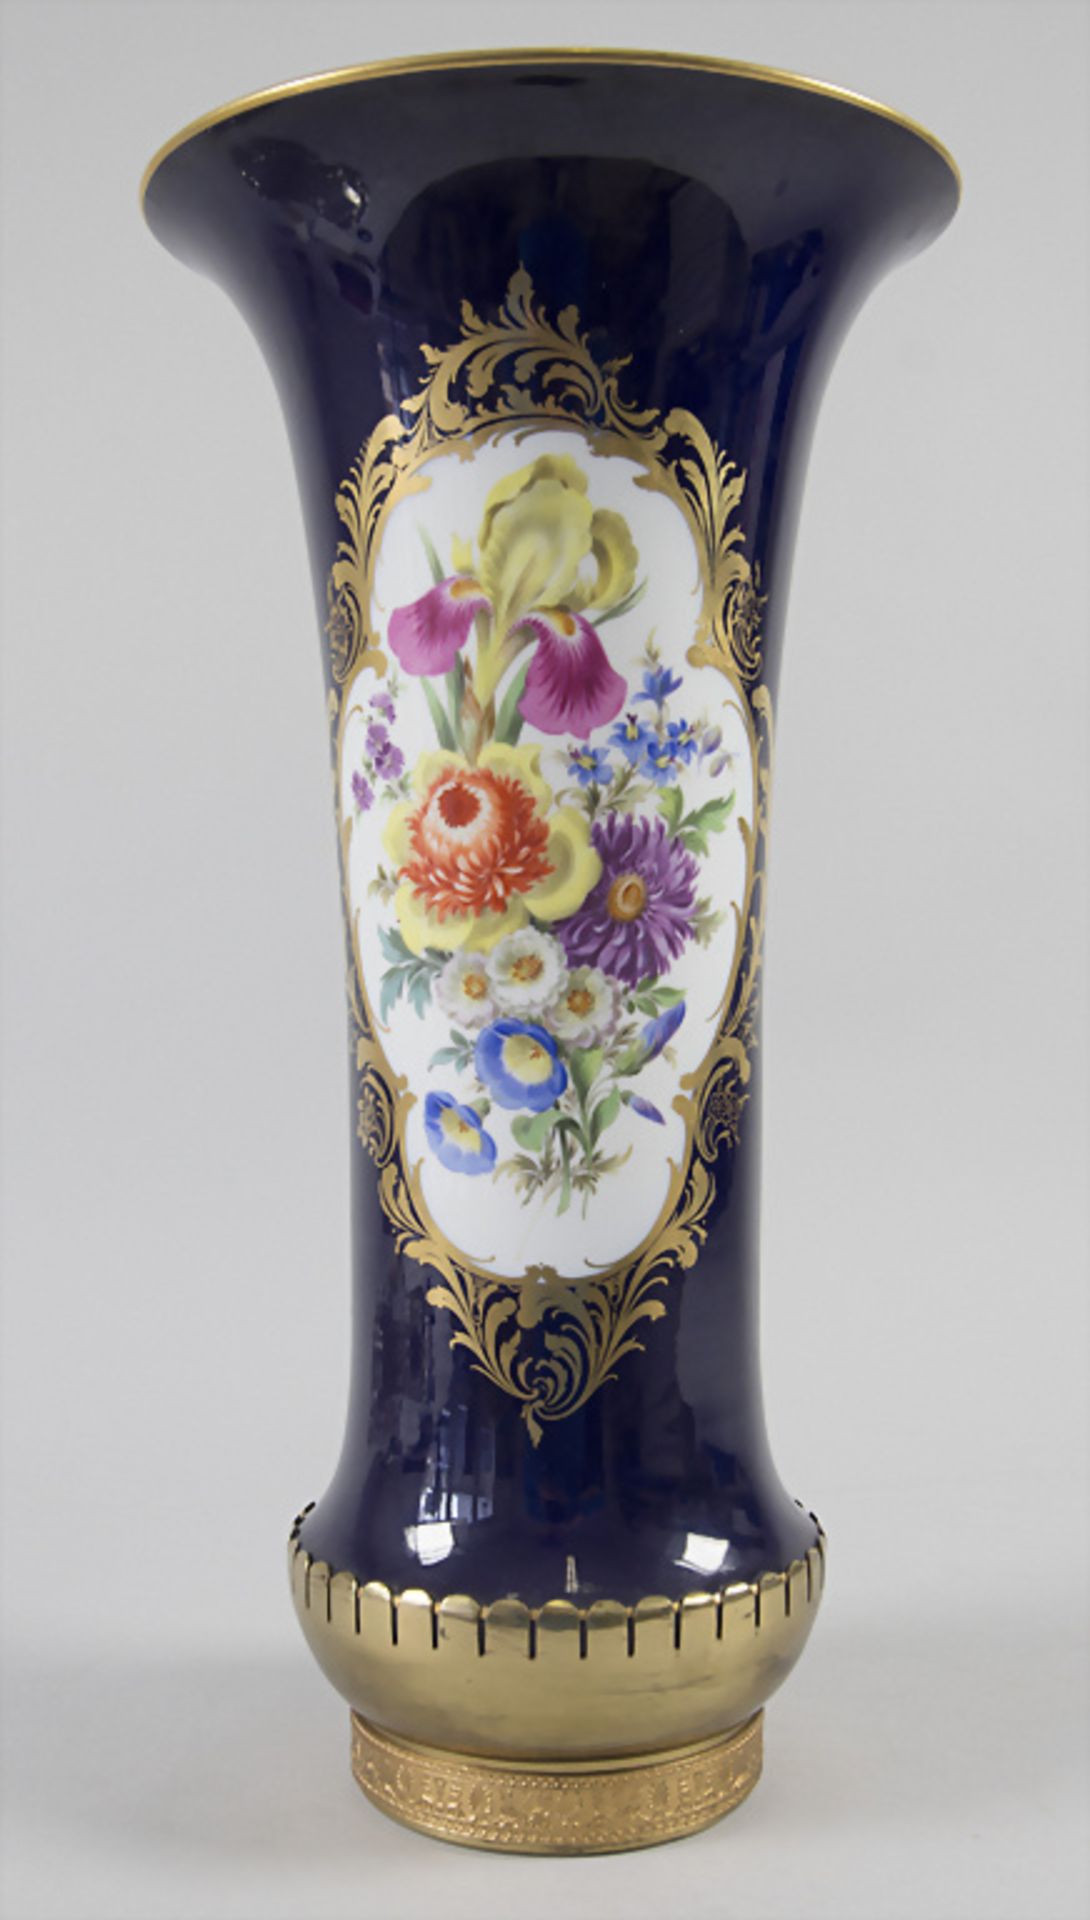 Flötenvase mit Blumenbouquet / A flute vase with flower bouquet, Meissen, 20. Jh.